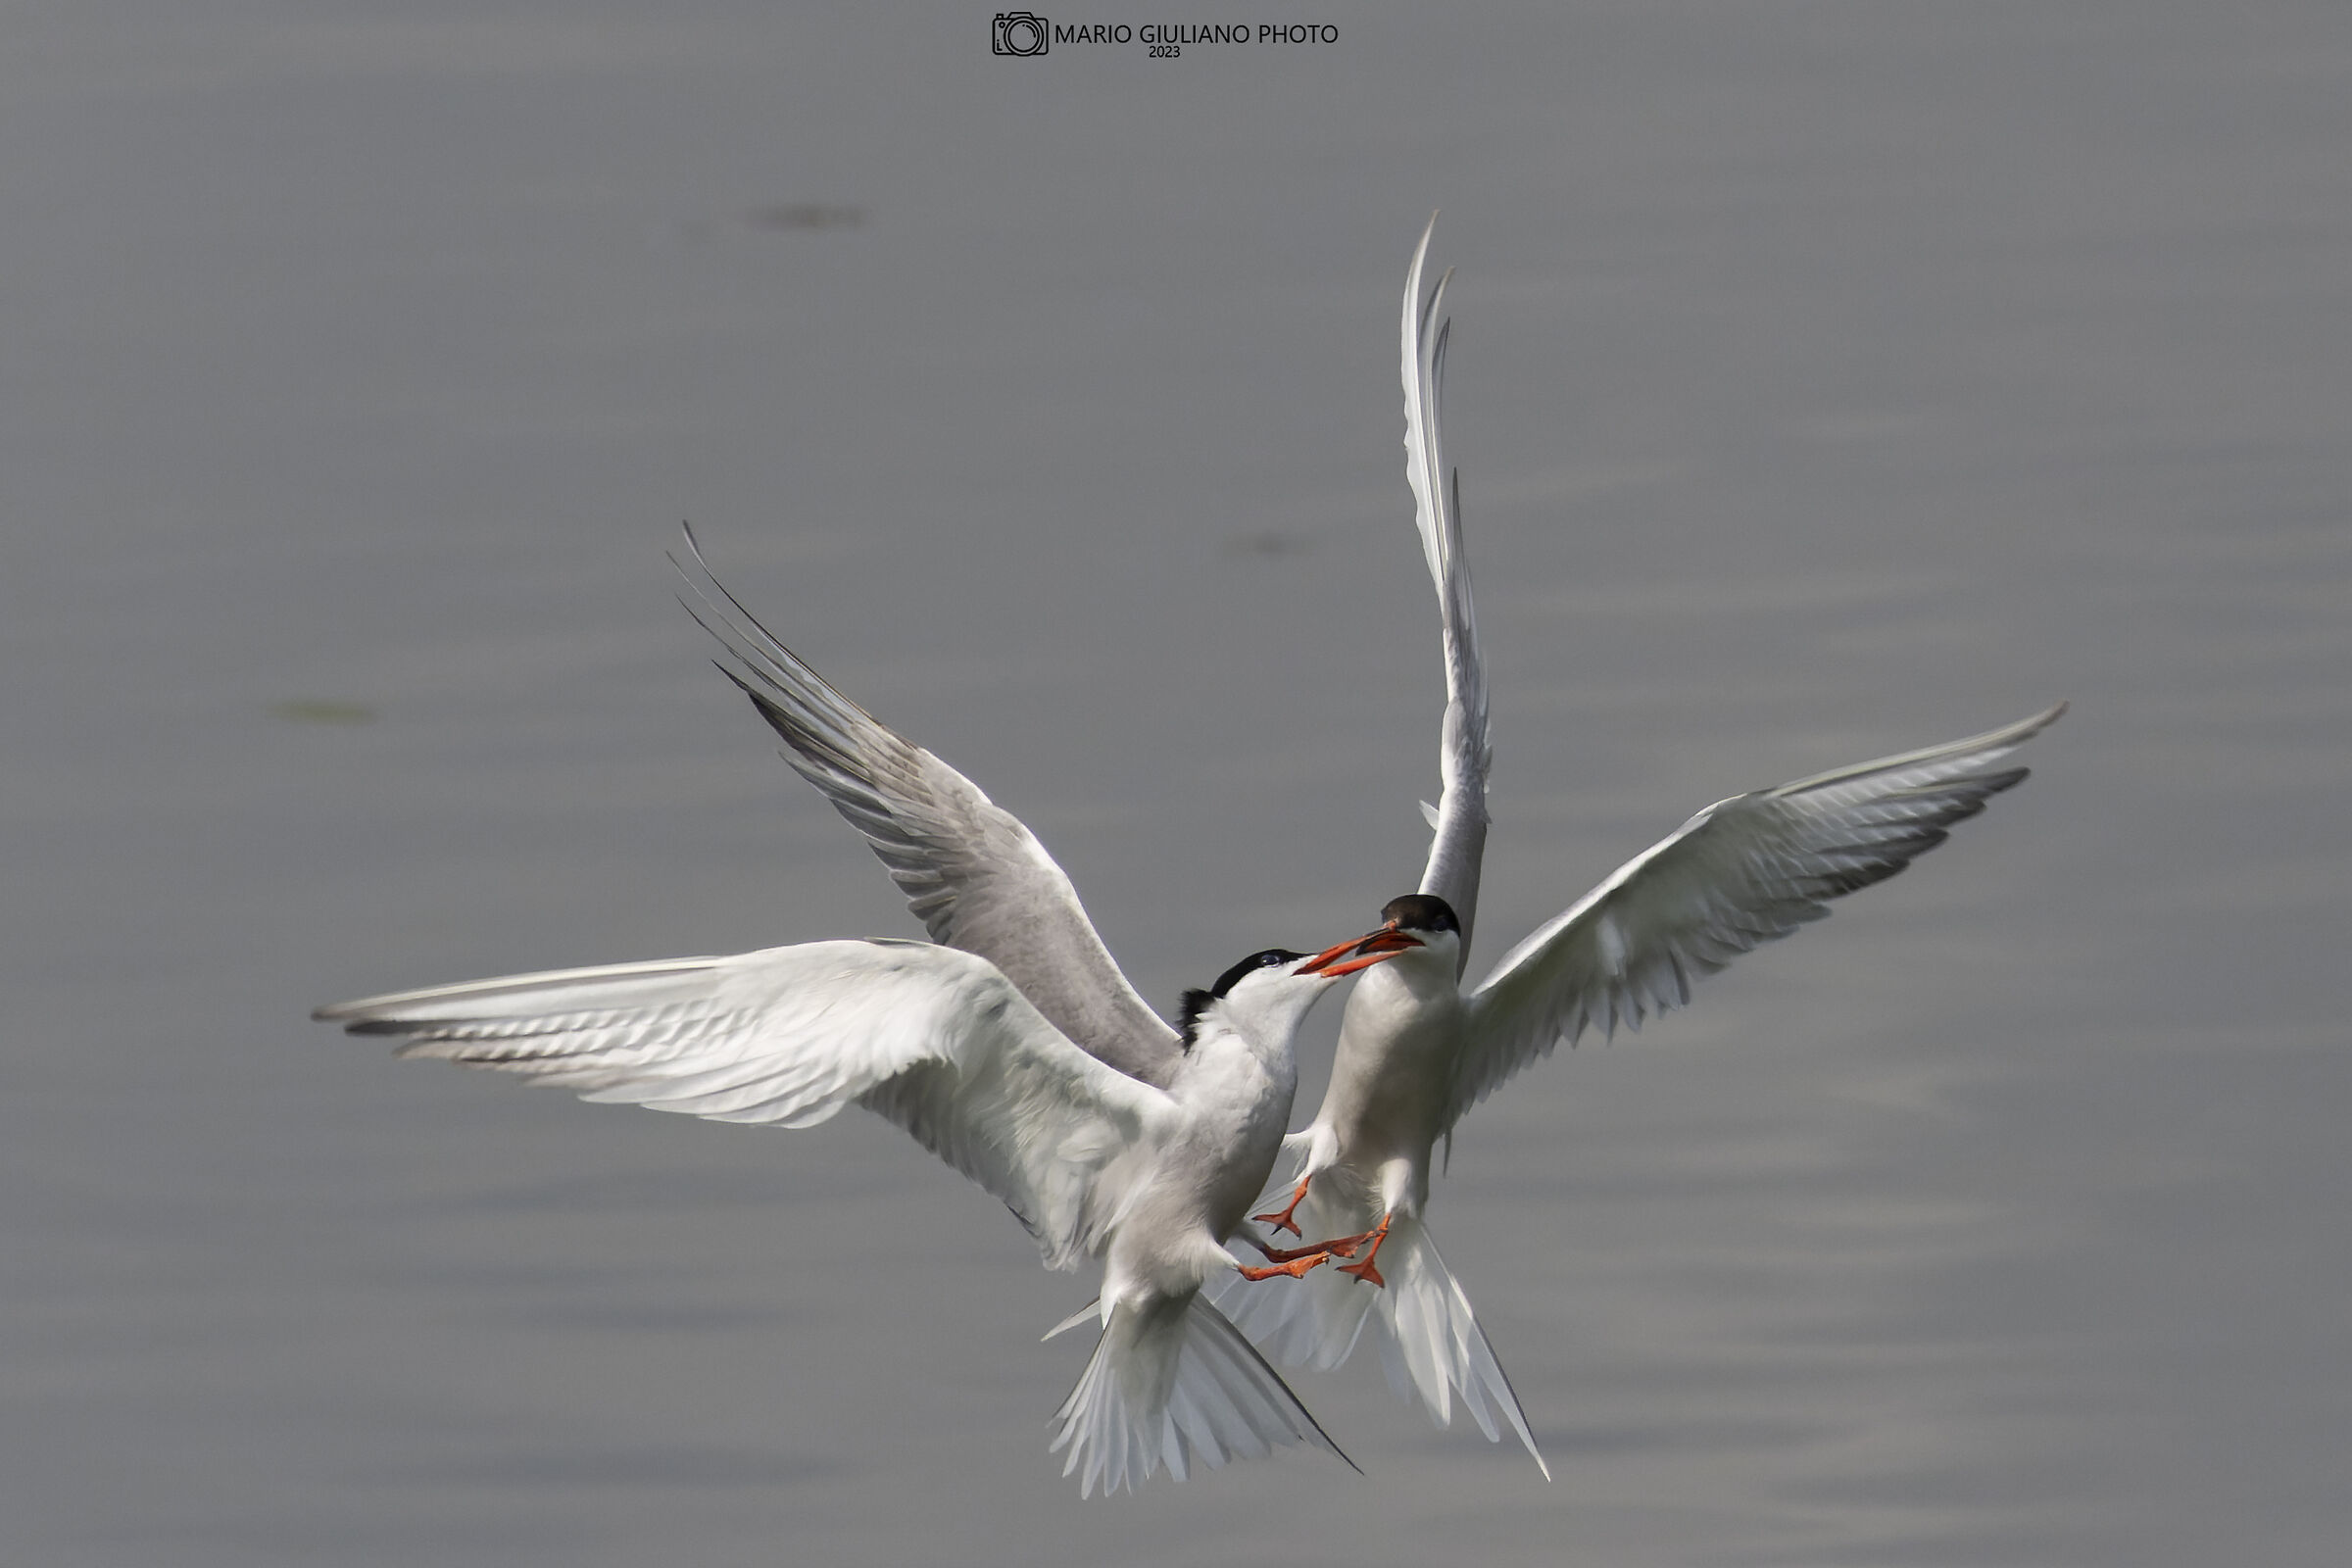 Quarrel between terns...